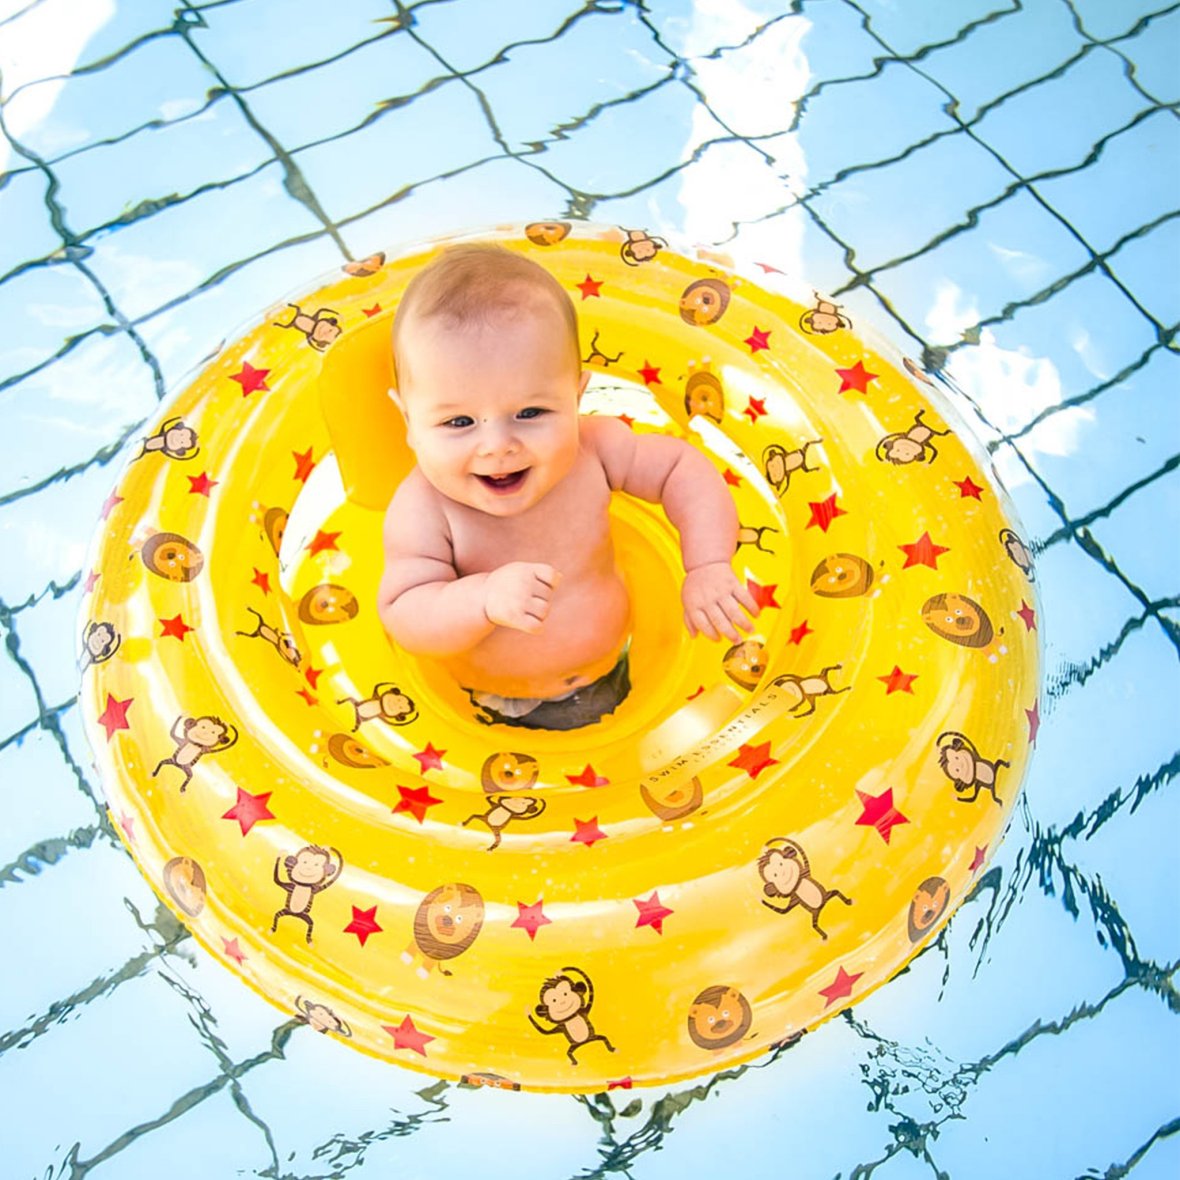 Fauteuil de piscine gonflable pour bébés Circus